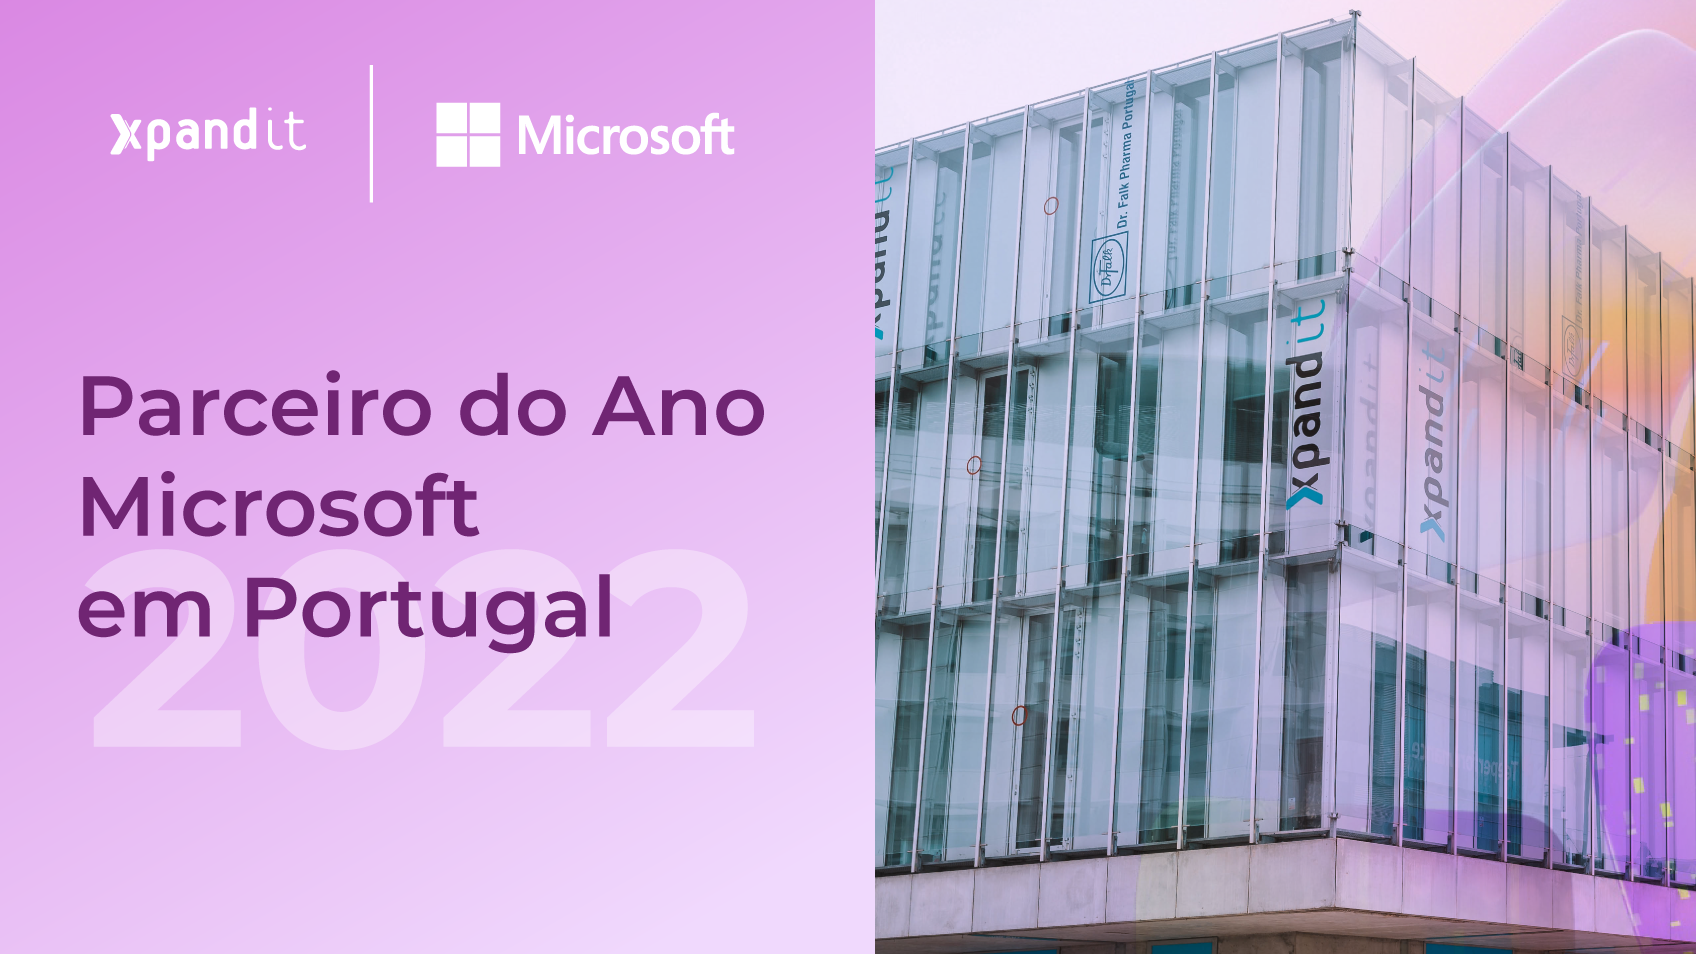 Xpand IT é o Parceiro do Ano em Portugal para a Microsoft